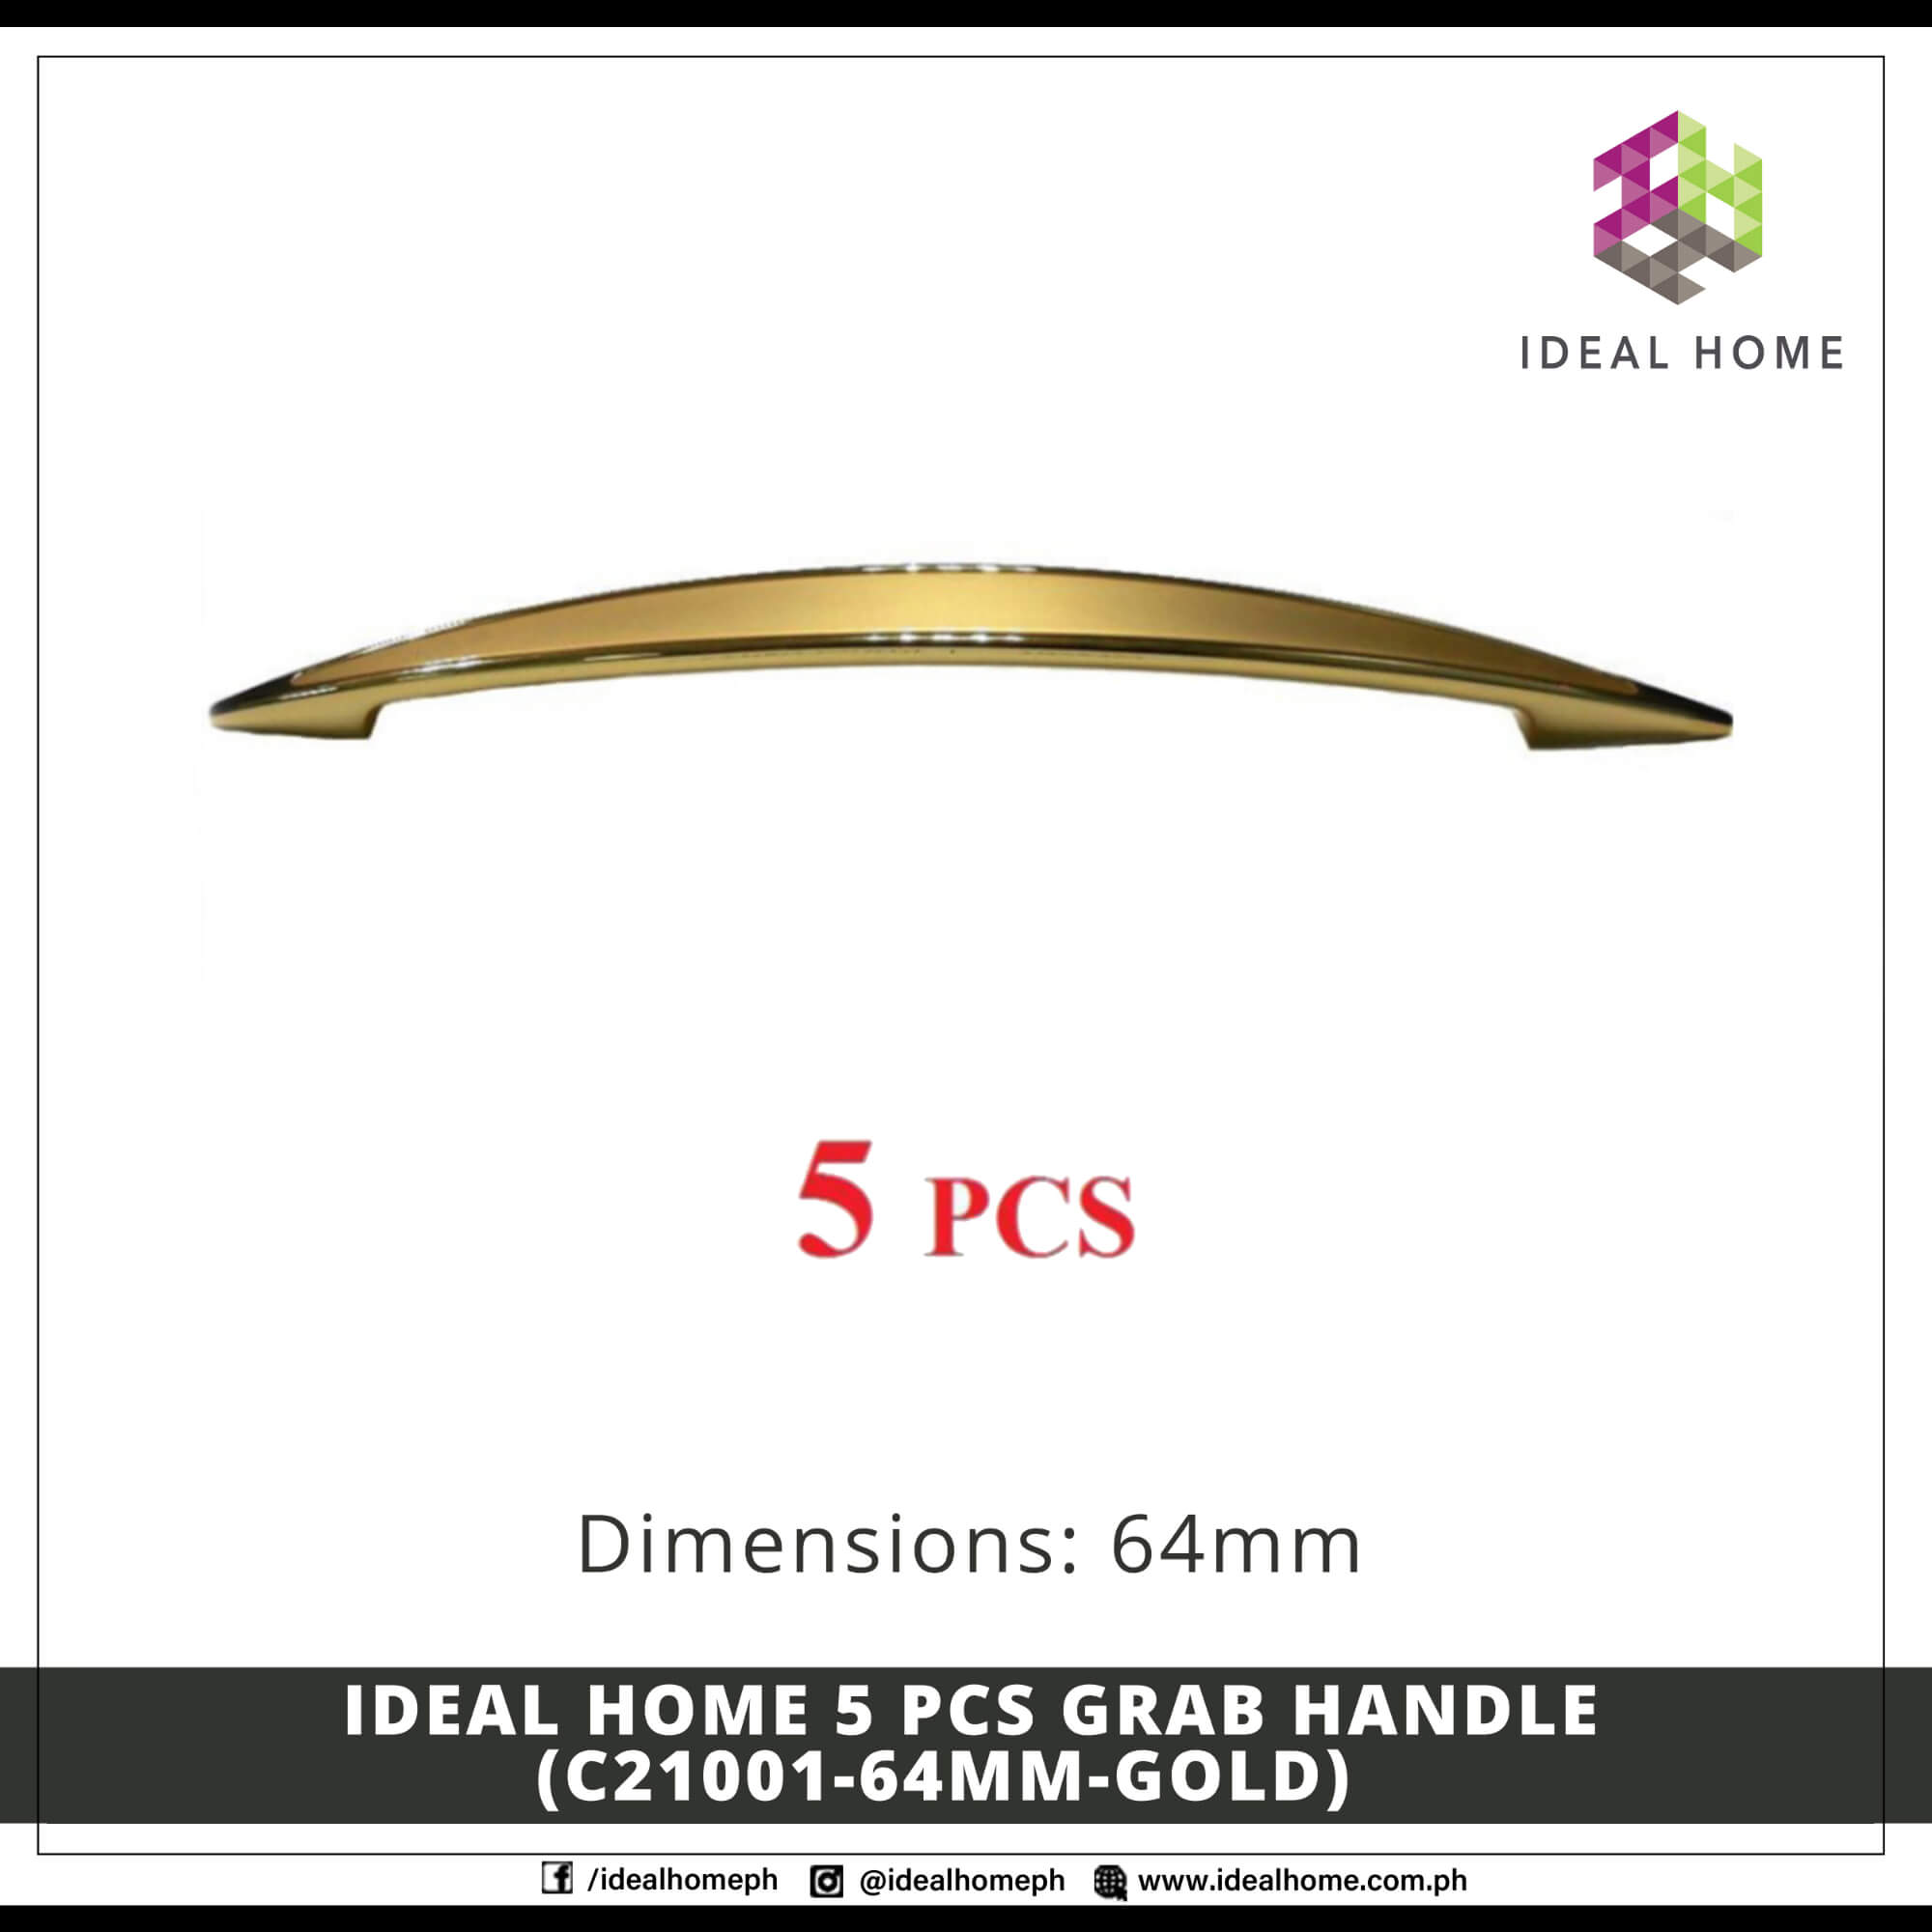 Ideal Home 5 PCS Grab Handle (C21001-64mm-GOLD)